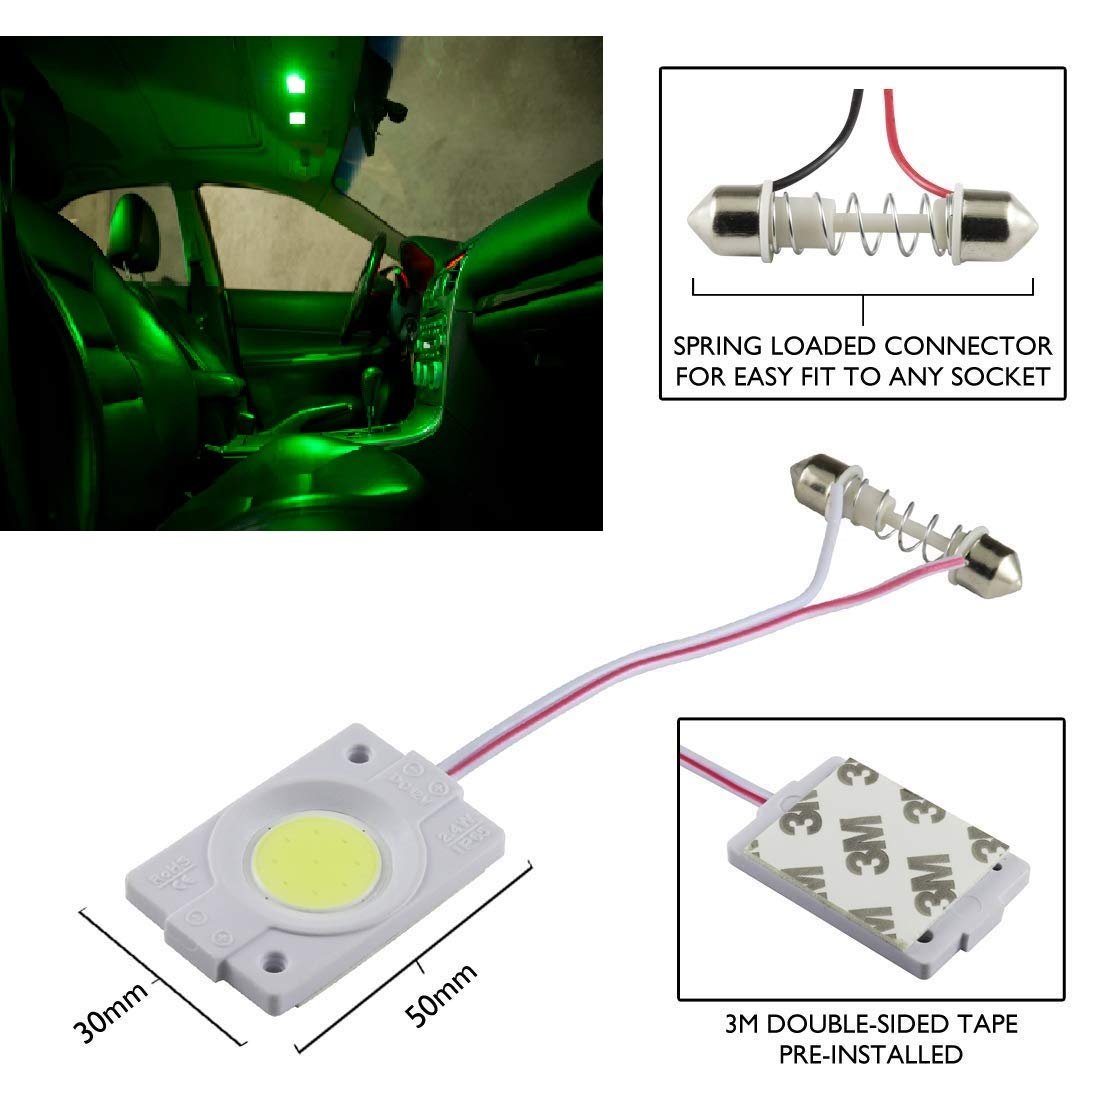 2.4W COB LED Interior Car Dome Light (Green, 12V, 1 Piece) Image 